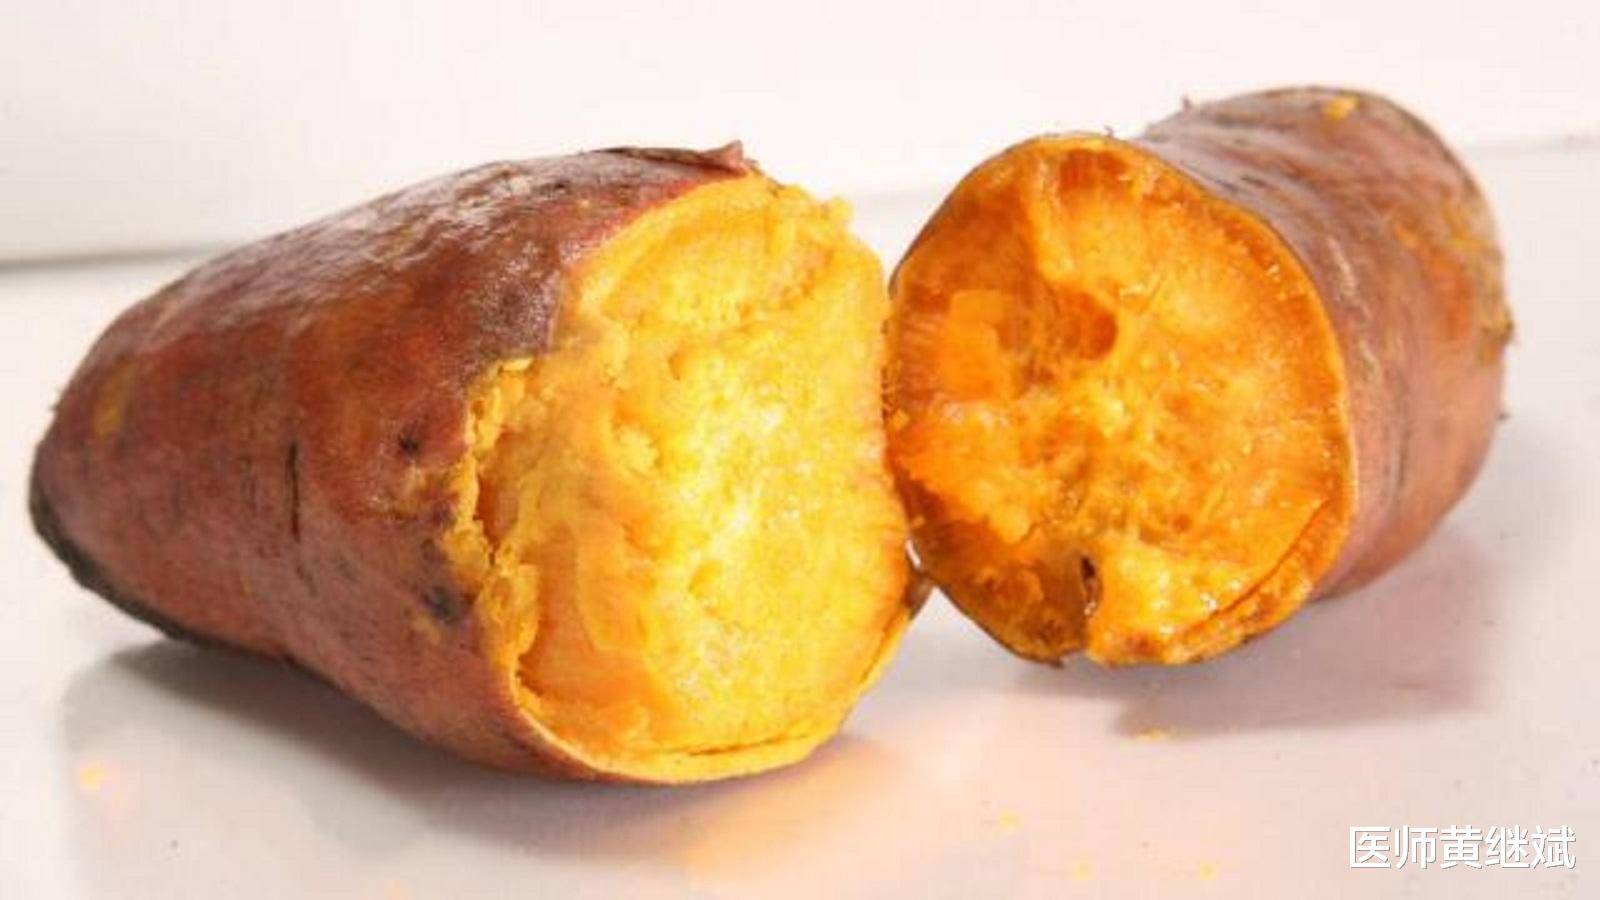 红薯富含淀粉和葡萄糖,适合用于减肥,红薯不能和什么一起吃?